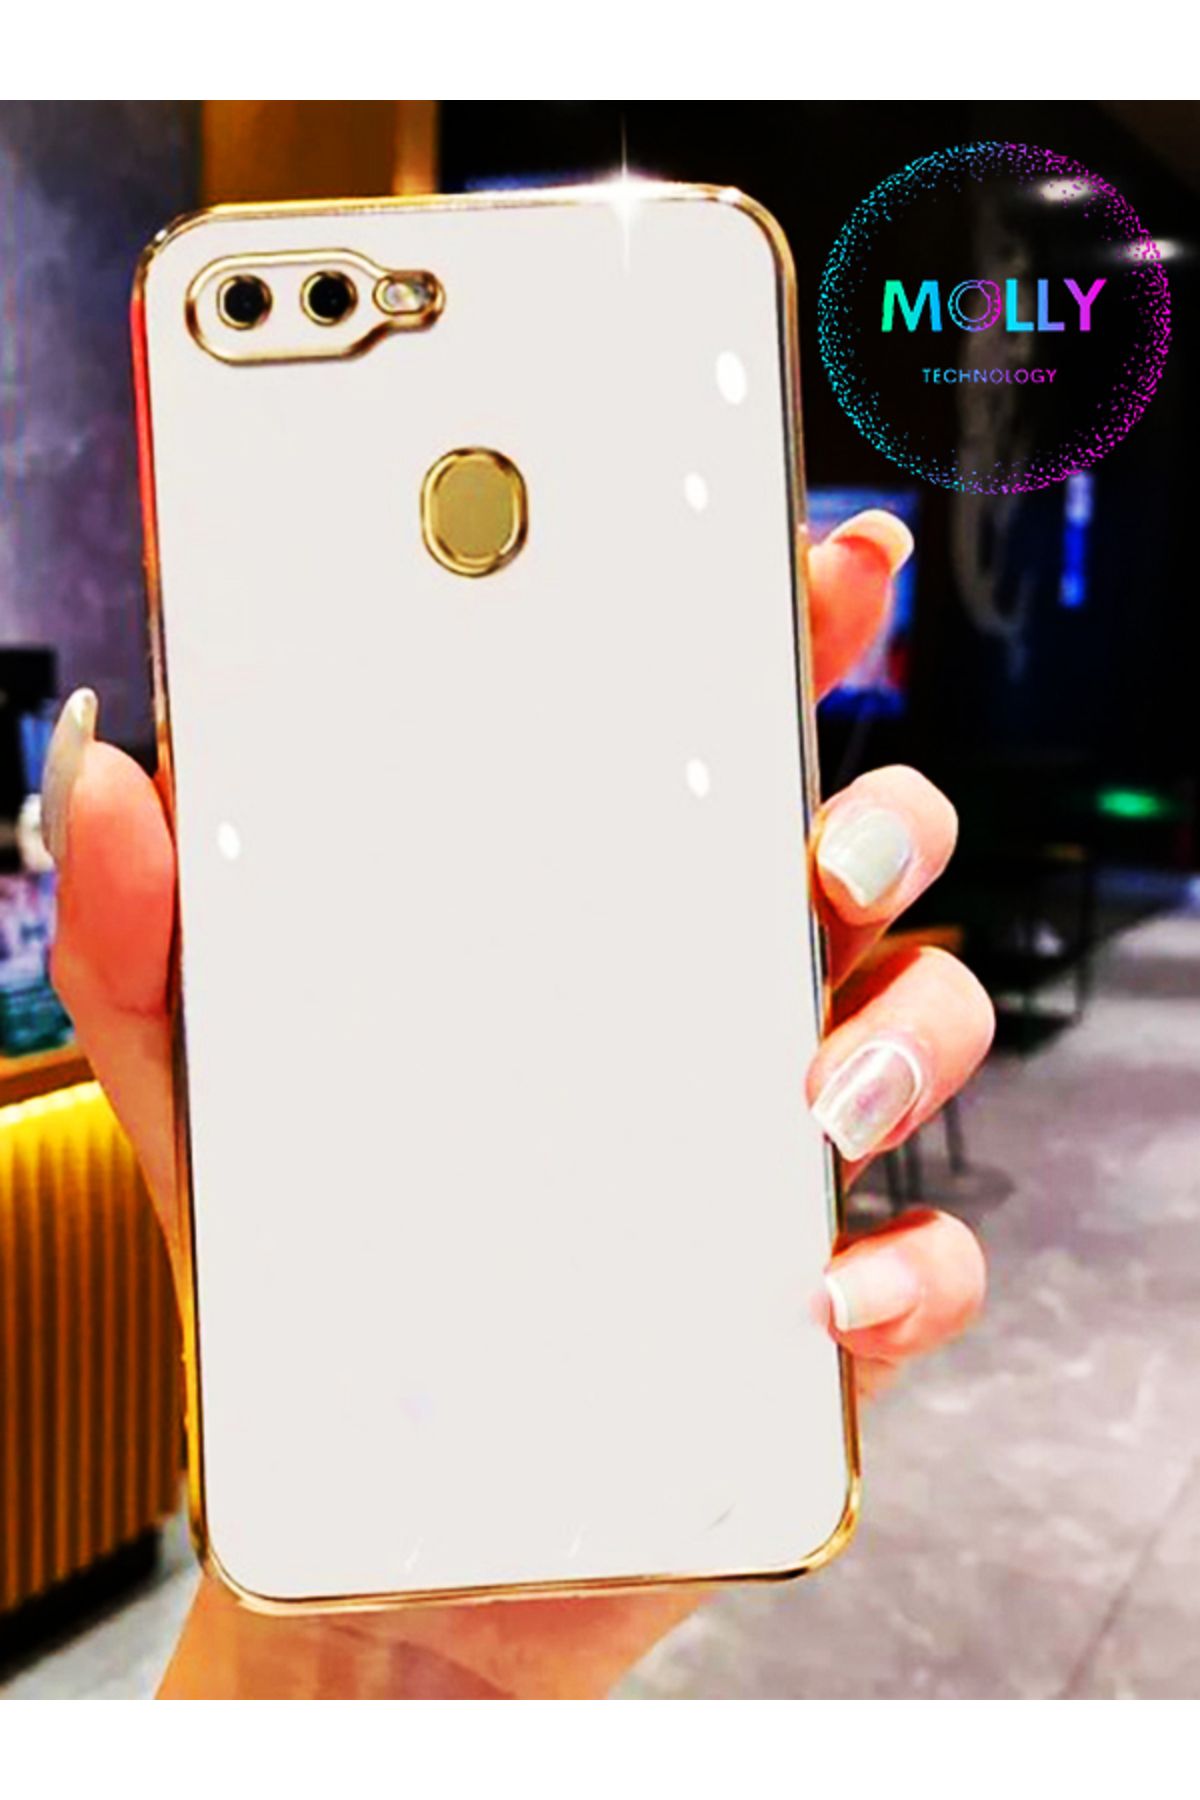 Molly Technology Huawei P Smart 2018 İçin İnci Beyazı Kenarları Gold Detaylı Lüks Silikon Kılıf